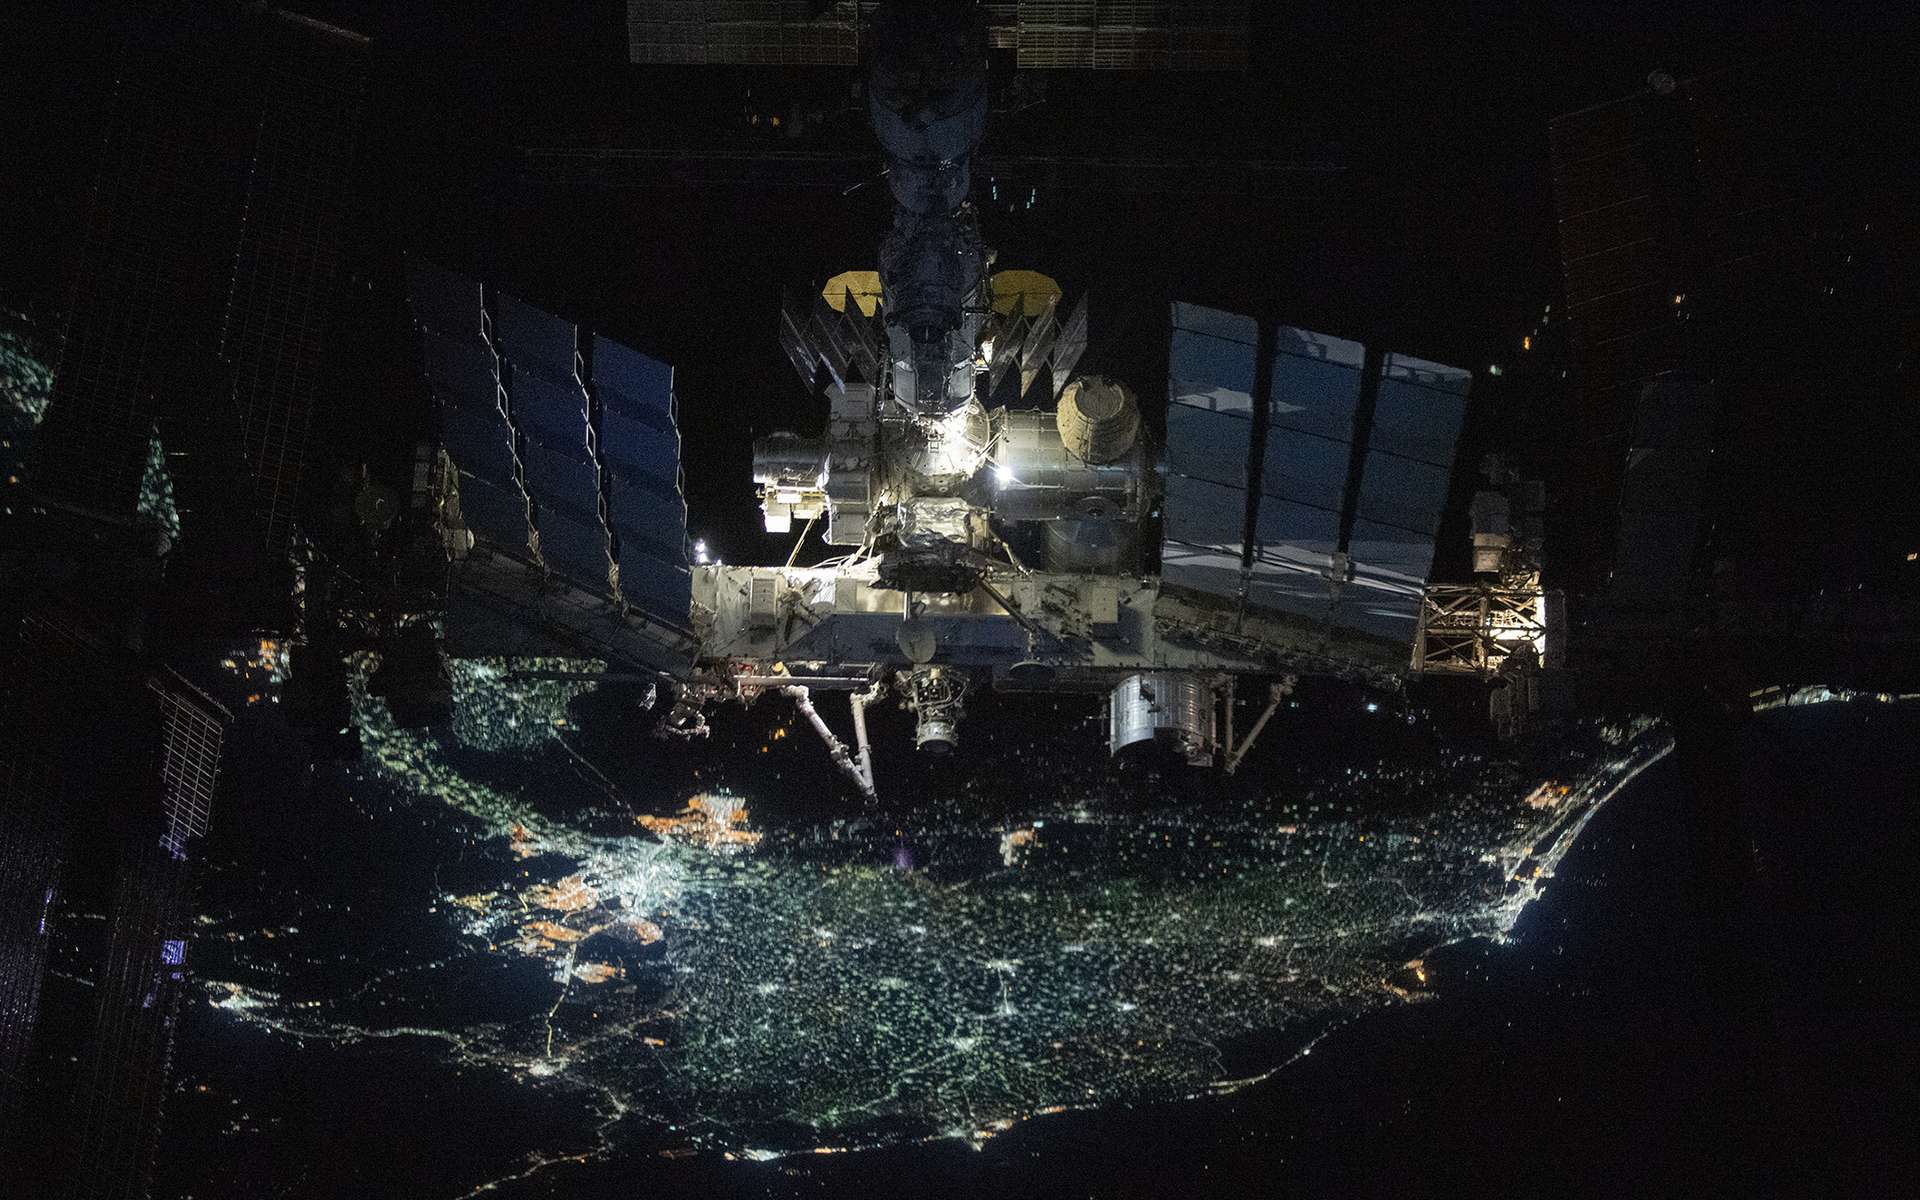 La Station spatiale internationale vue par l'équipage Crew 2 à bord d'une capsule Crew Dragon en vol pour retourner sur Terre. © Nasa, SpaceX